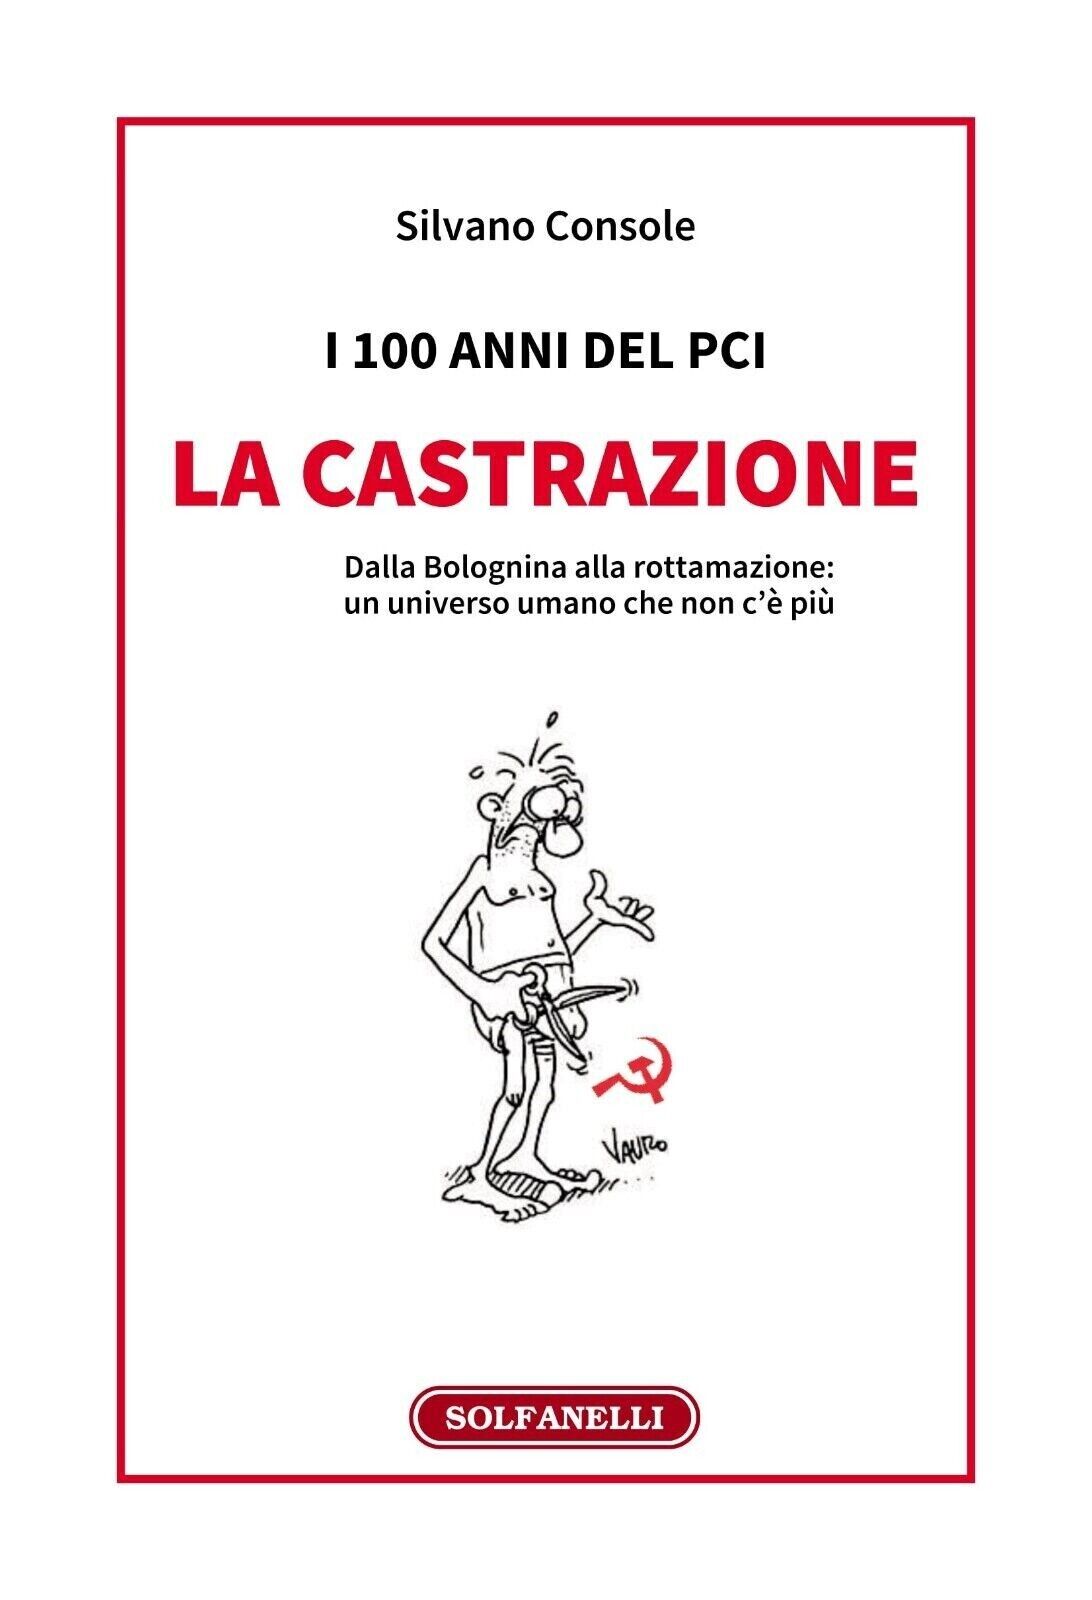  I 100 anni del PCI: la castrazione. Dalla Bolognina alla rottamazione: un unive libro usato